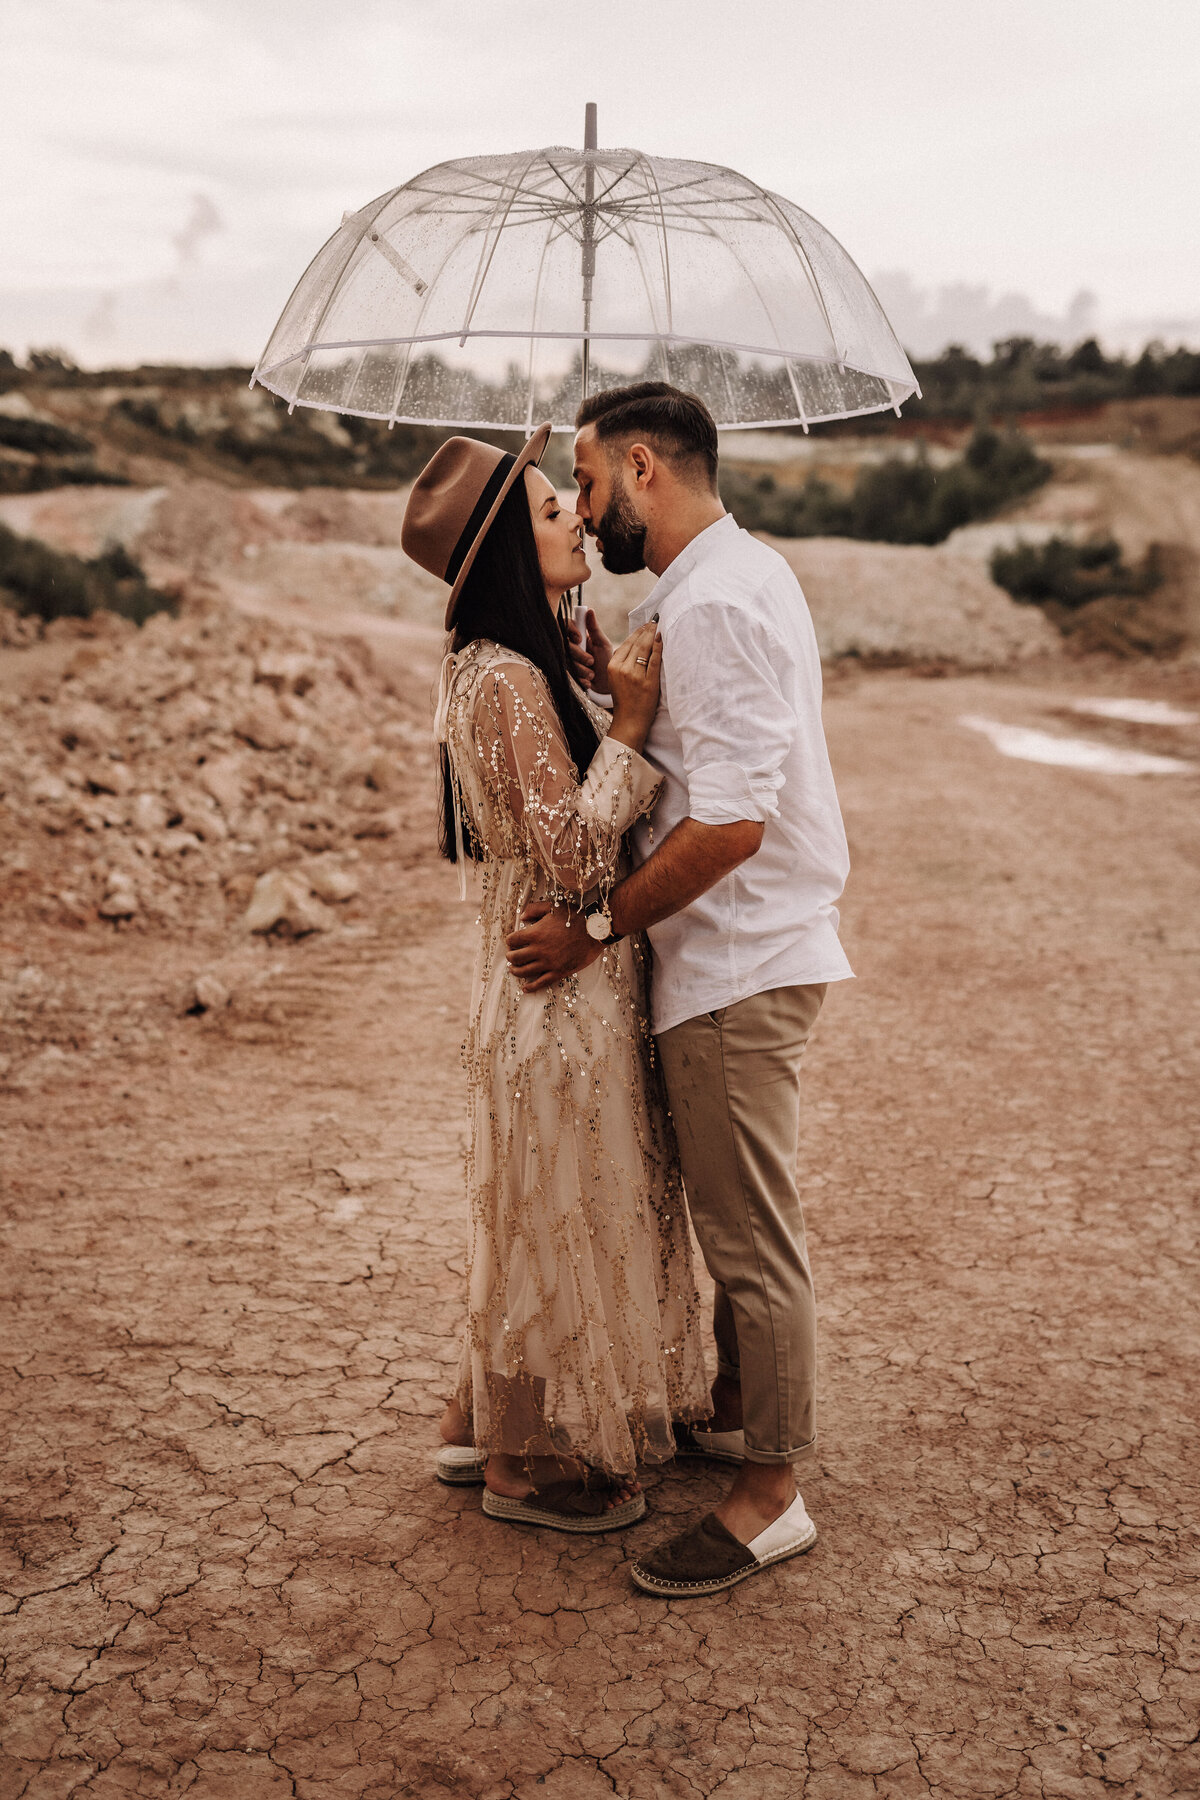 Liebespaar unter einem Regenschirm in einem Steinbruch